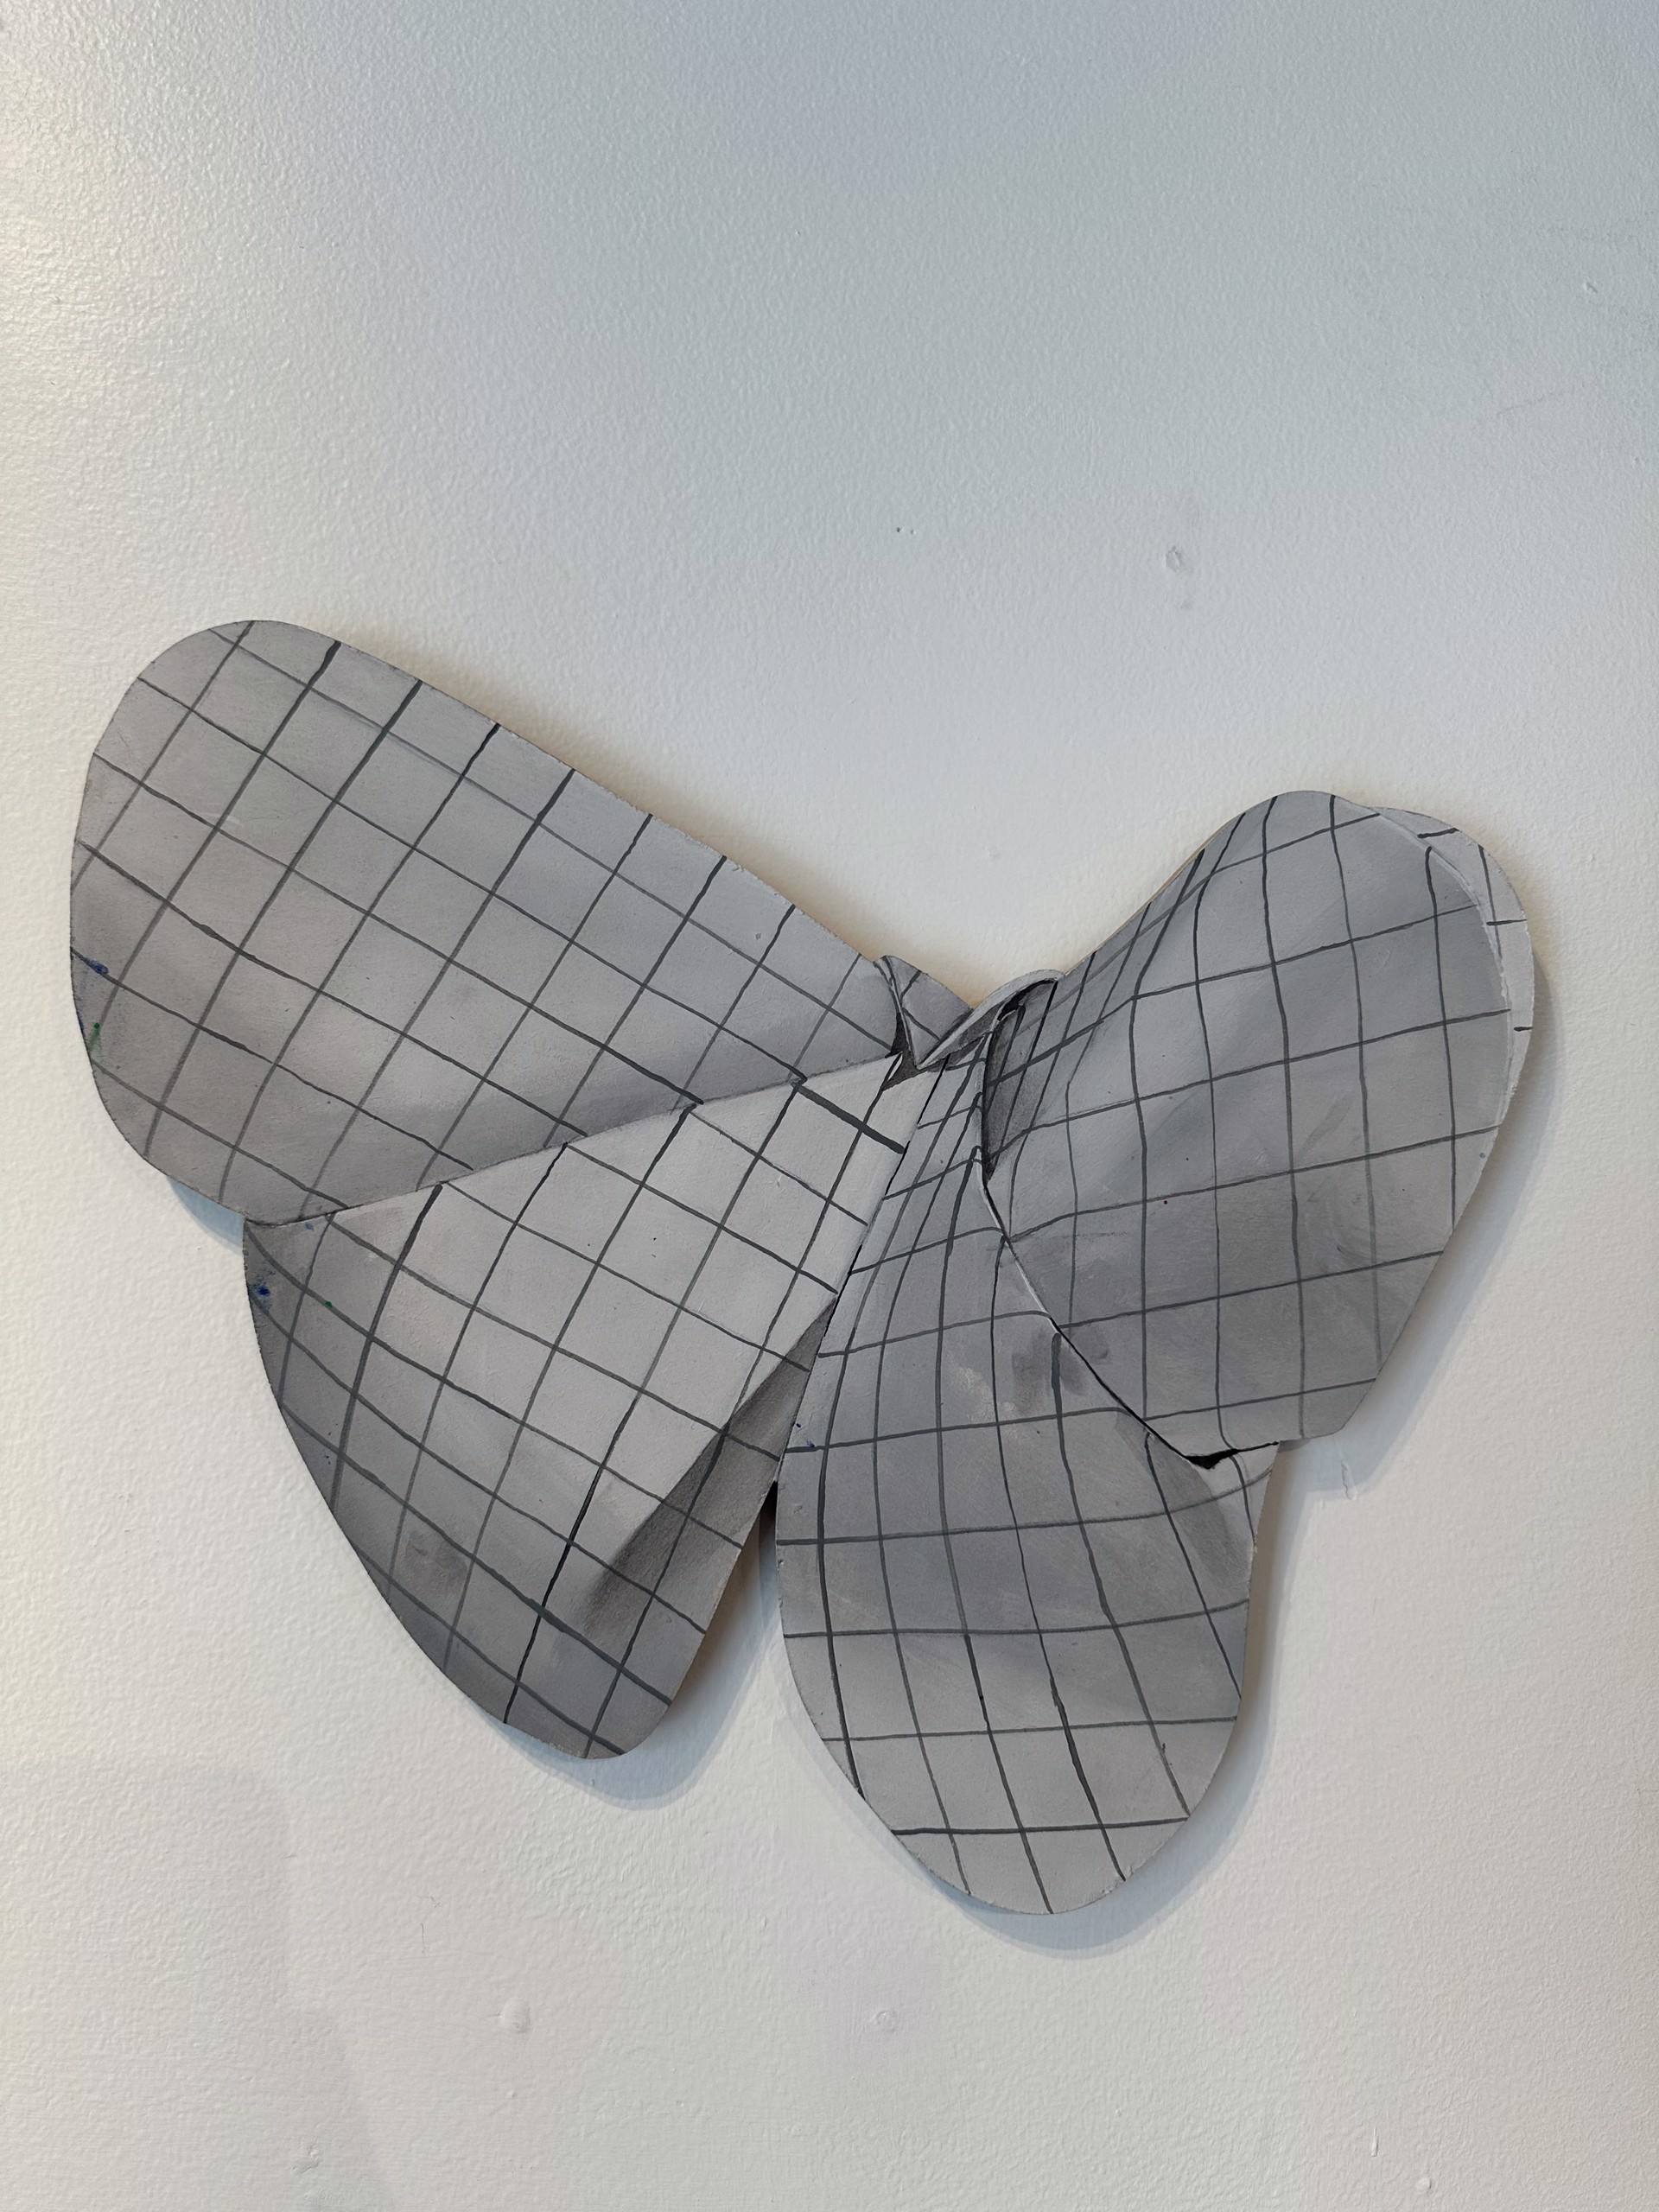 Paper Butterfly - Mini by Johannes Ehemann